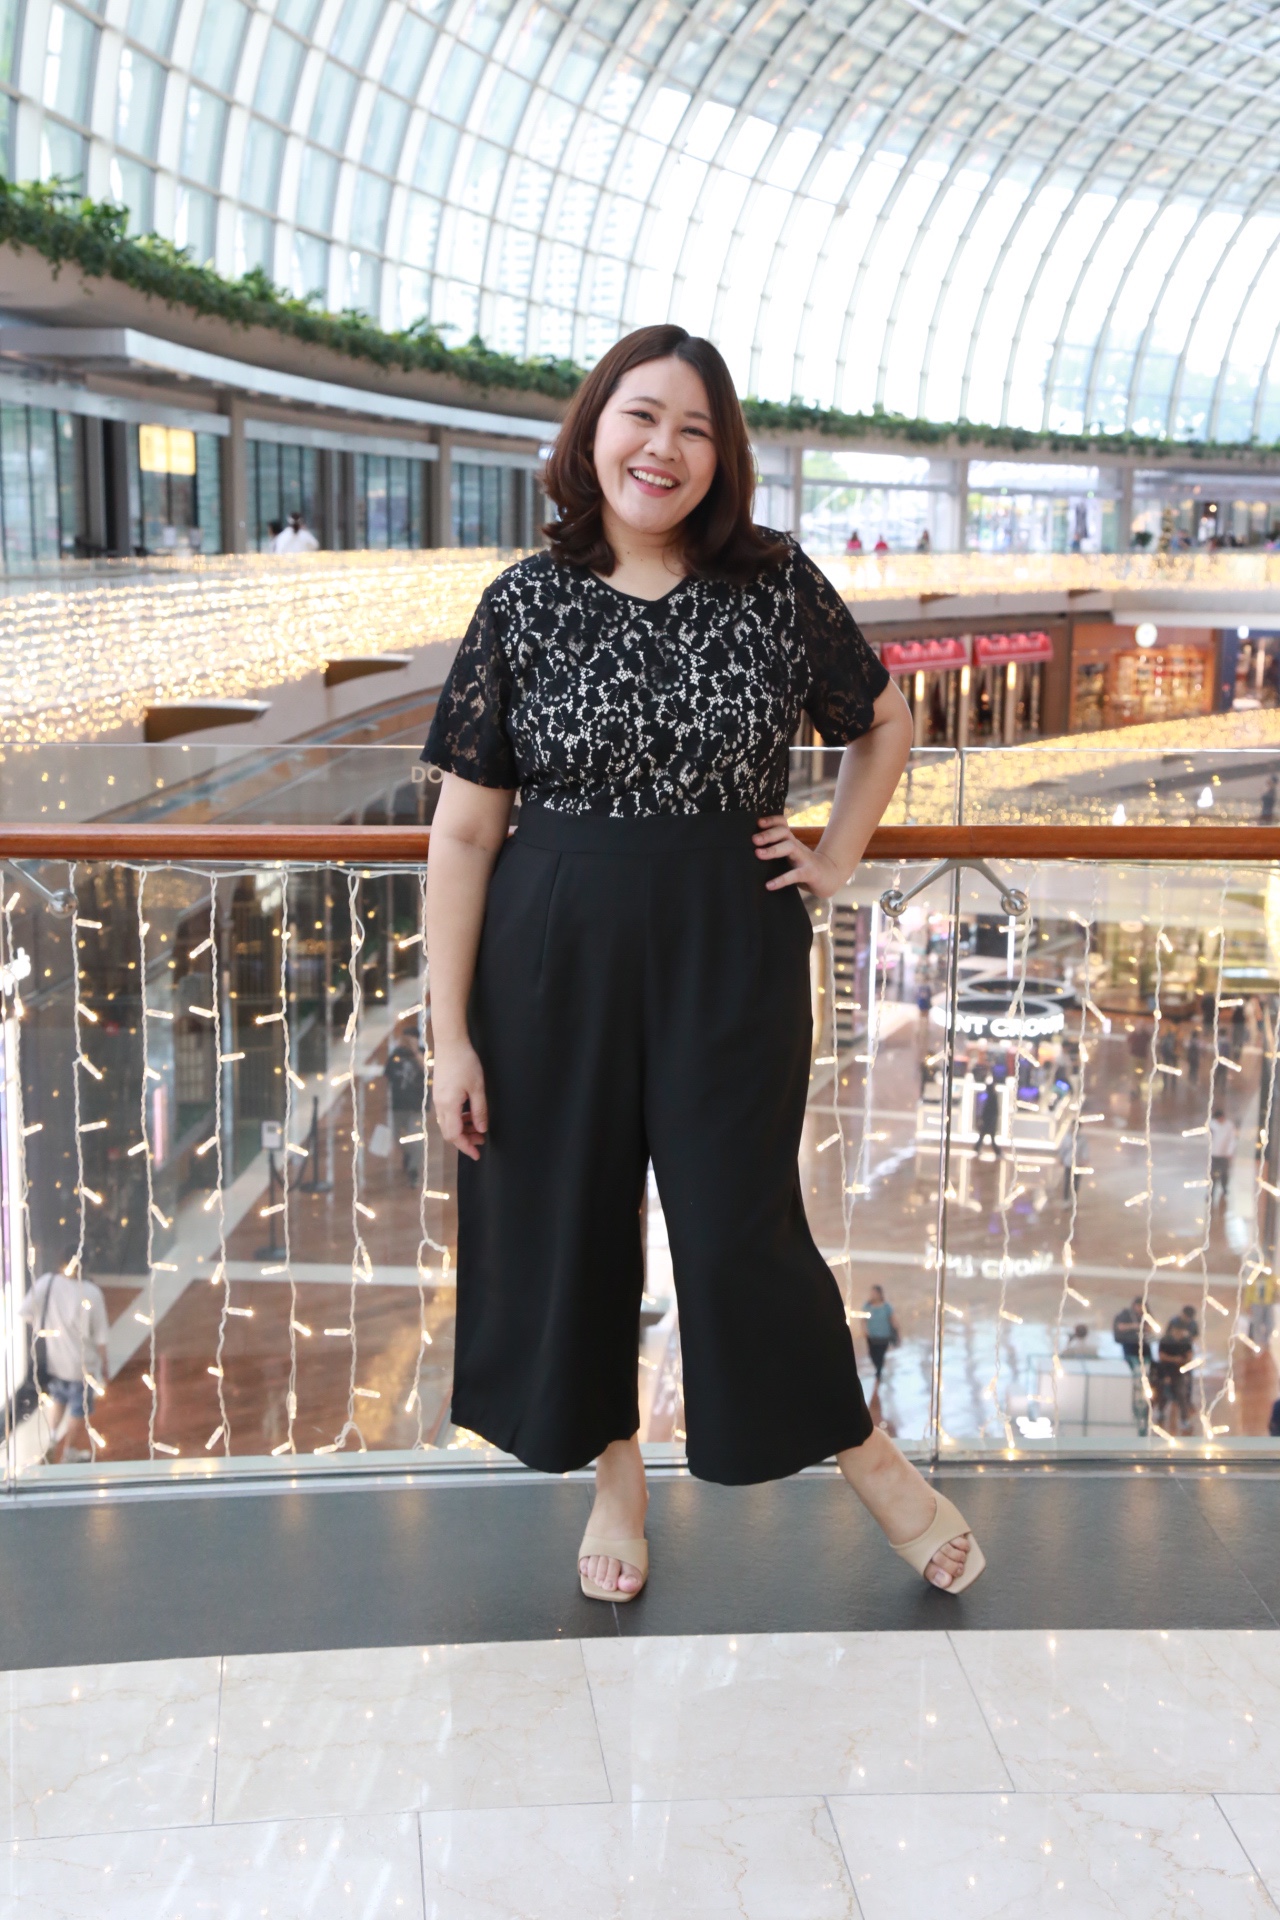 Love+ Eli Nova Premium Lace Black Jumpsuit | Plus Size Jumpsuit